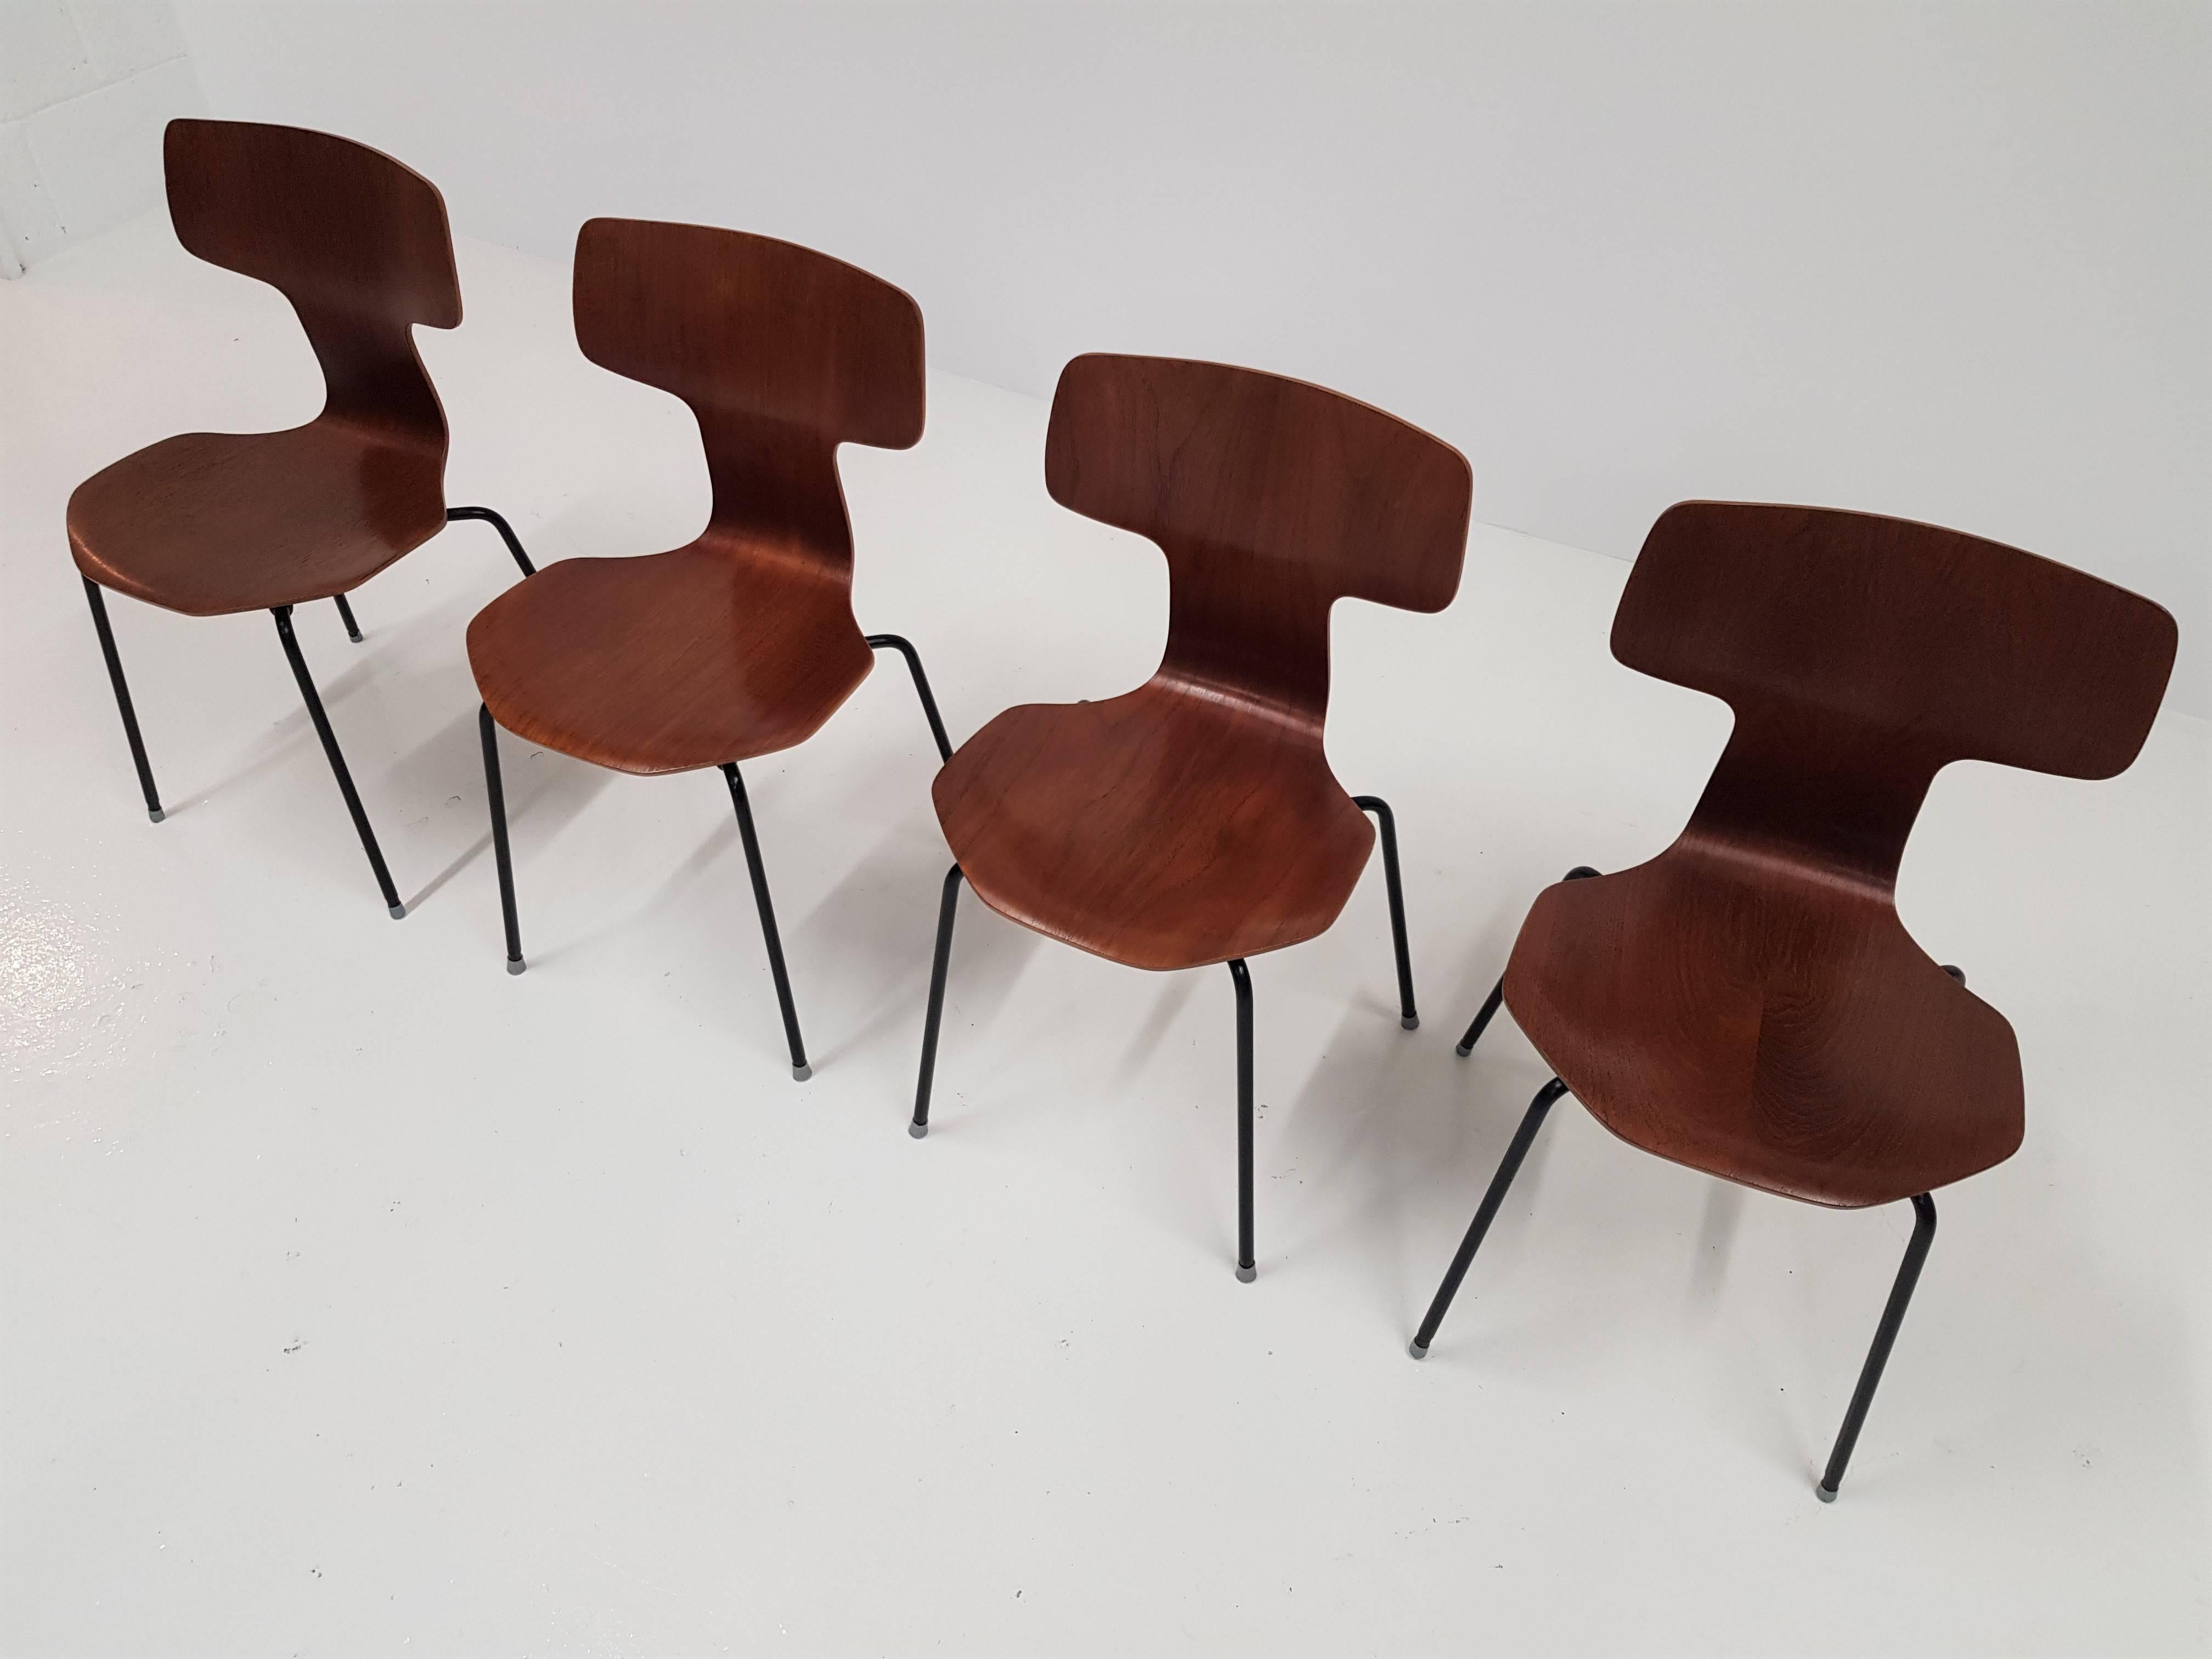 Steel Model 3103 Teak Hammer Chairs by Arne Jacobsen for Fritz Hansen, 1960s